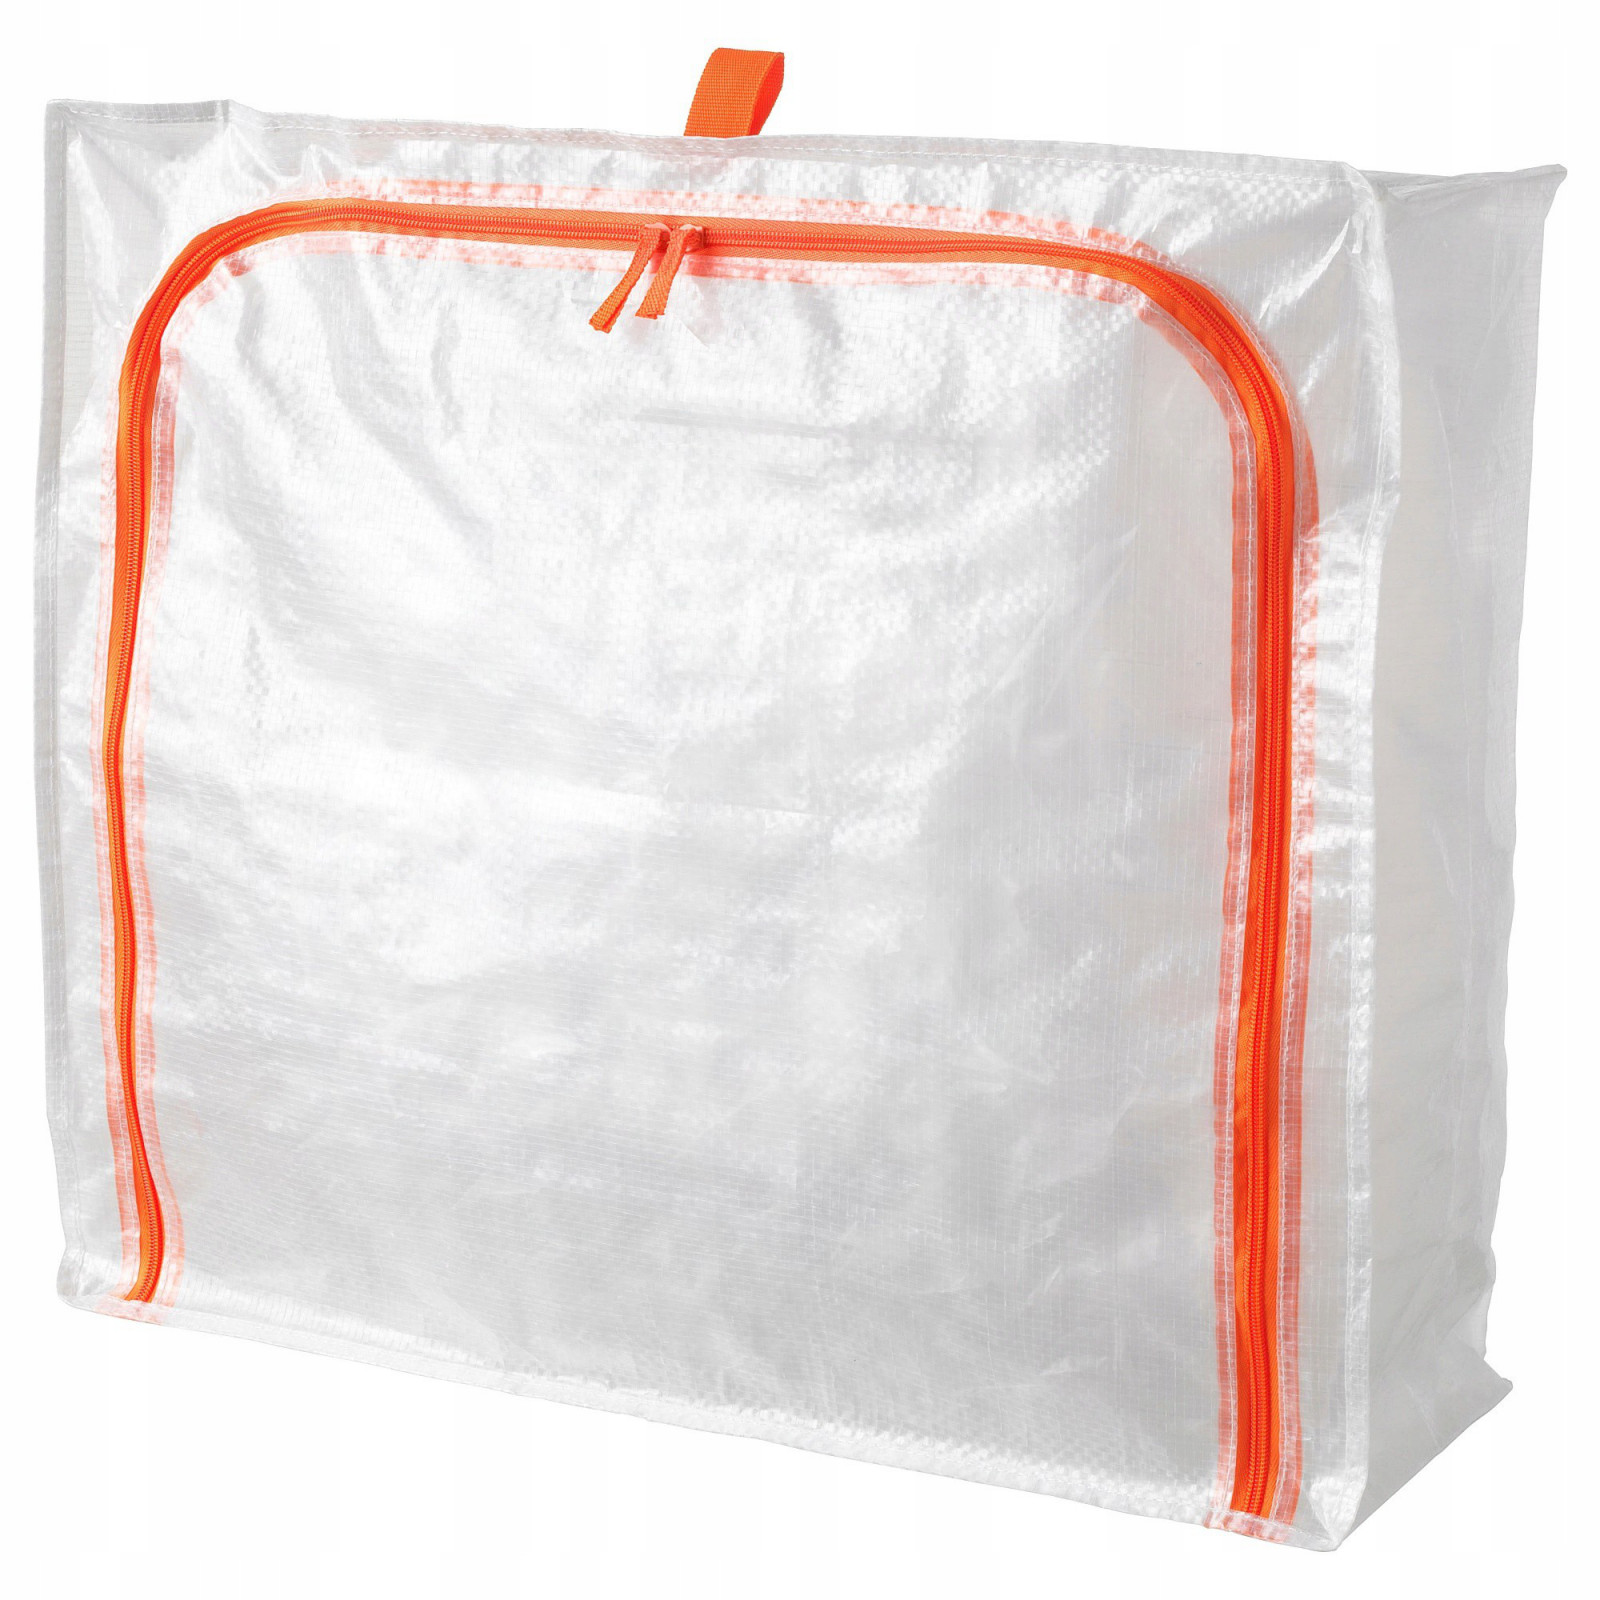 Ochranná taška na ložní prádlo oblečení 55x49x19 cm megamix.shop